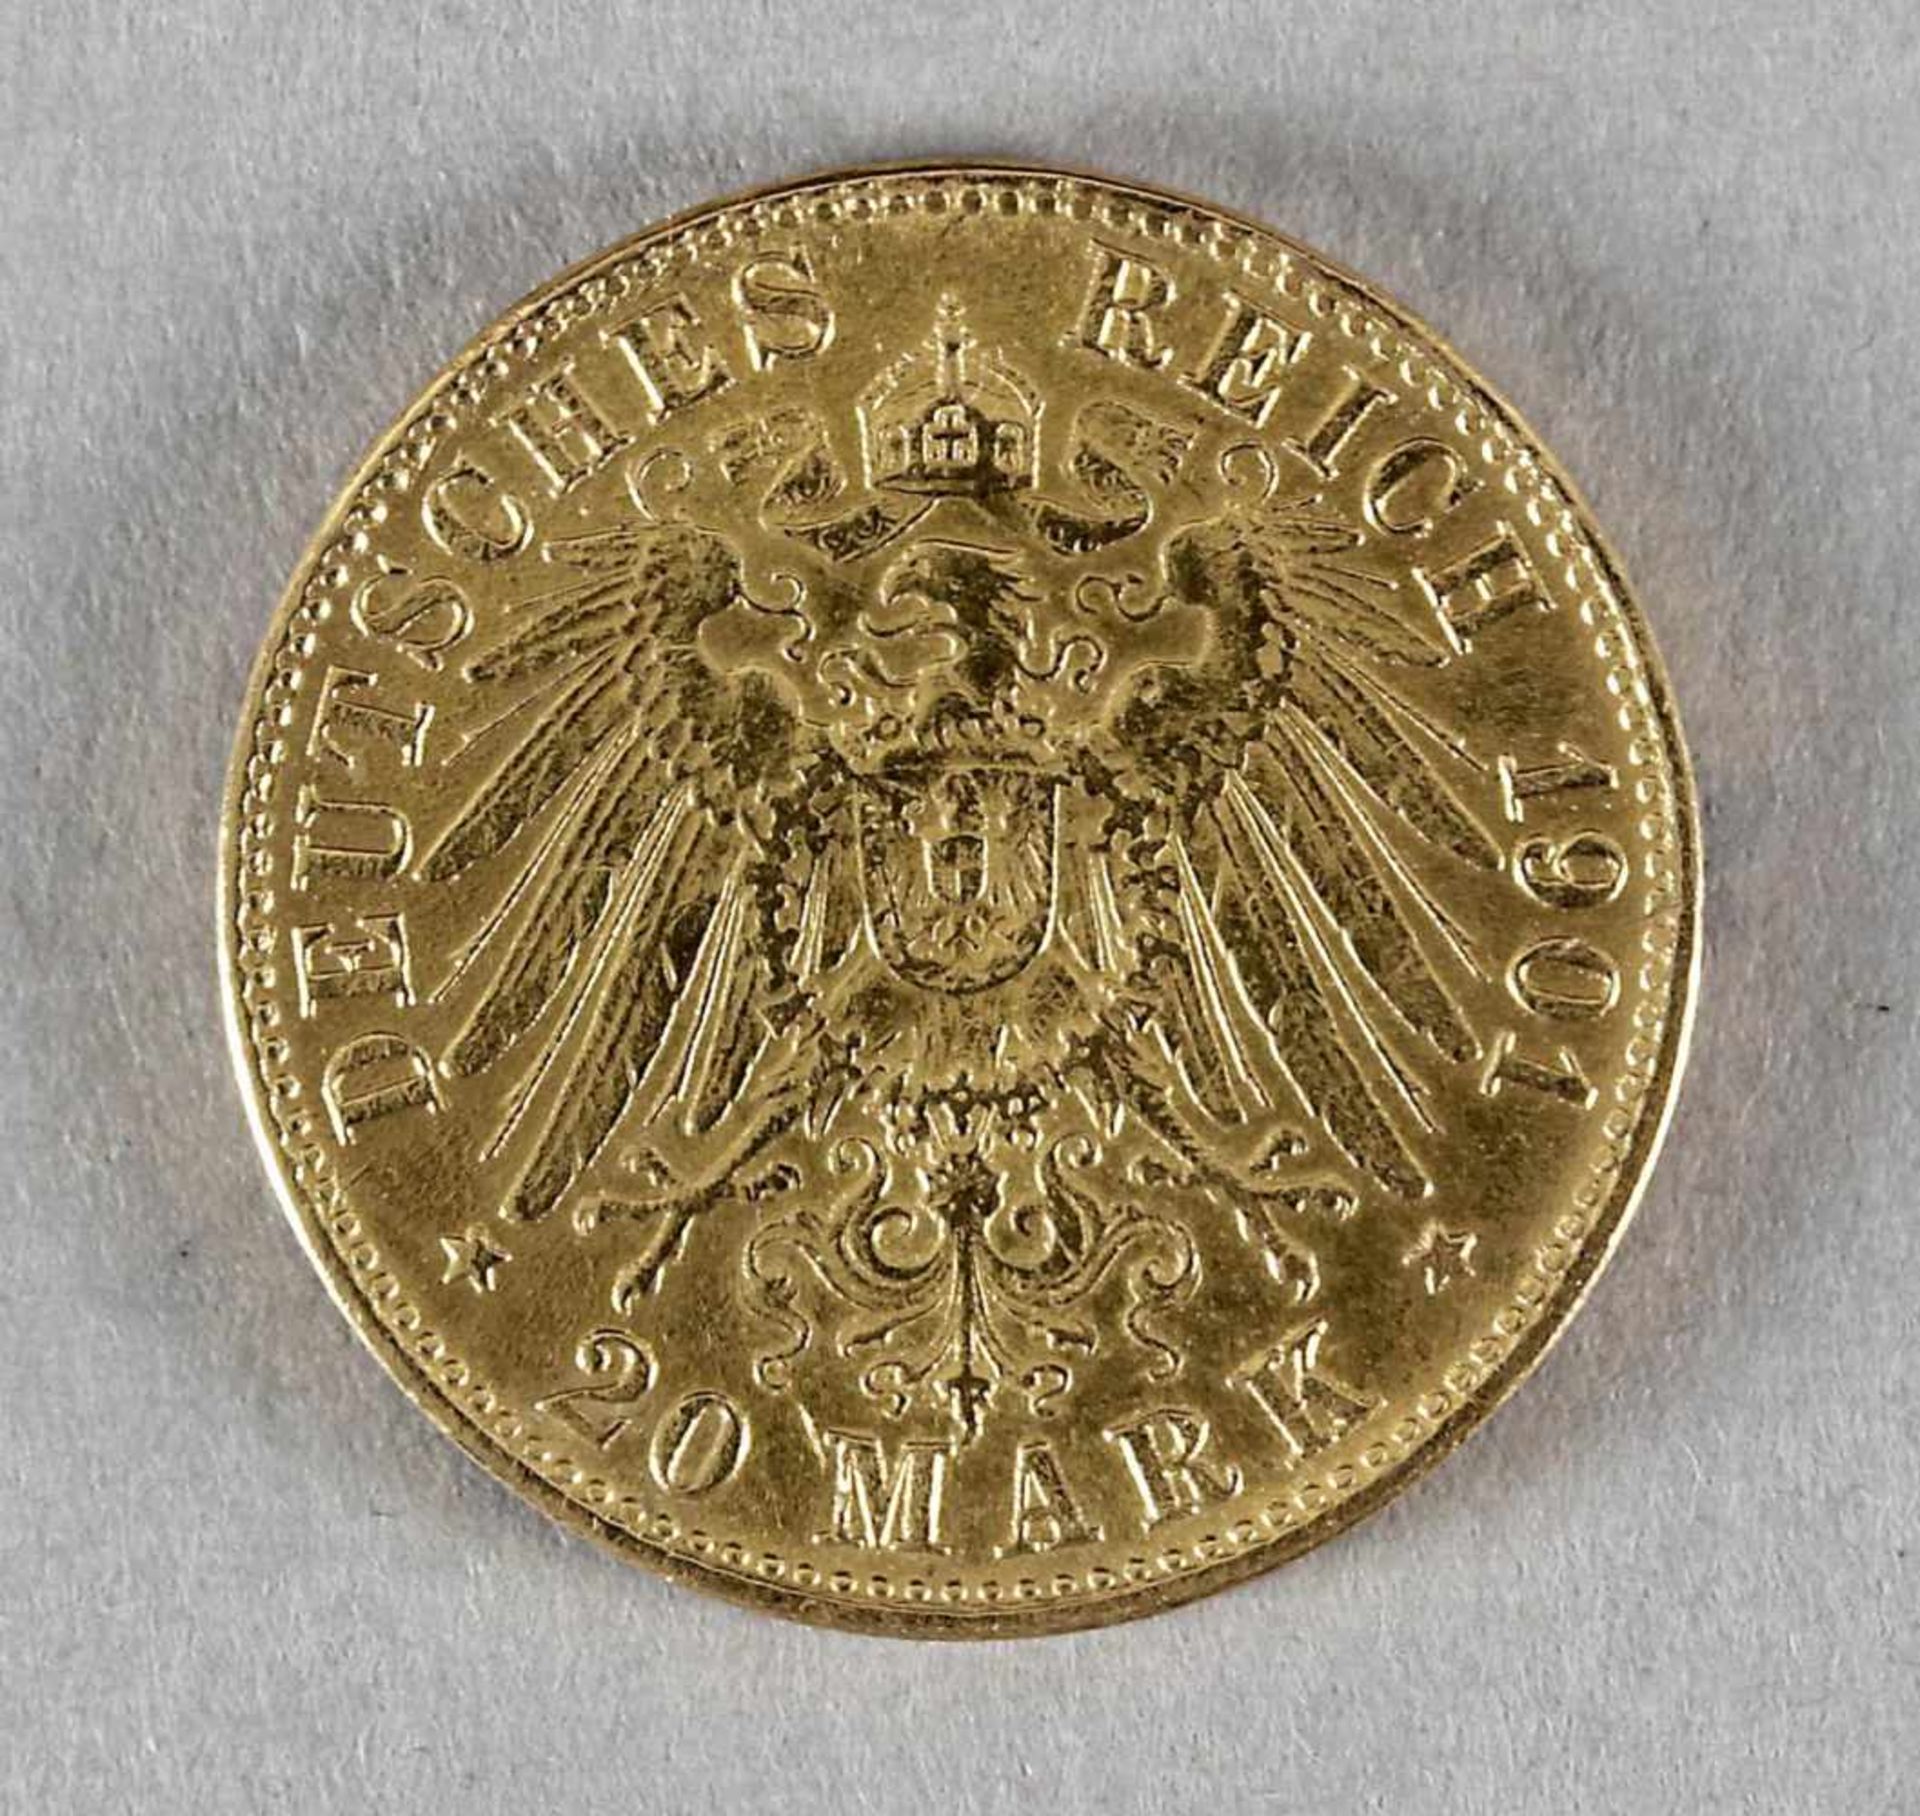 Goldmünze, 20 Mark, Wilhelm II. von Preußen, 1901 A - Bild 2 aus 2